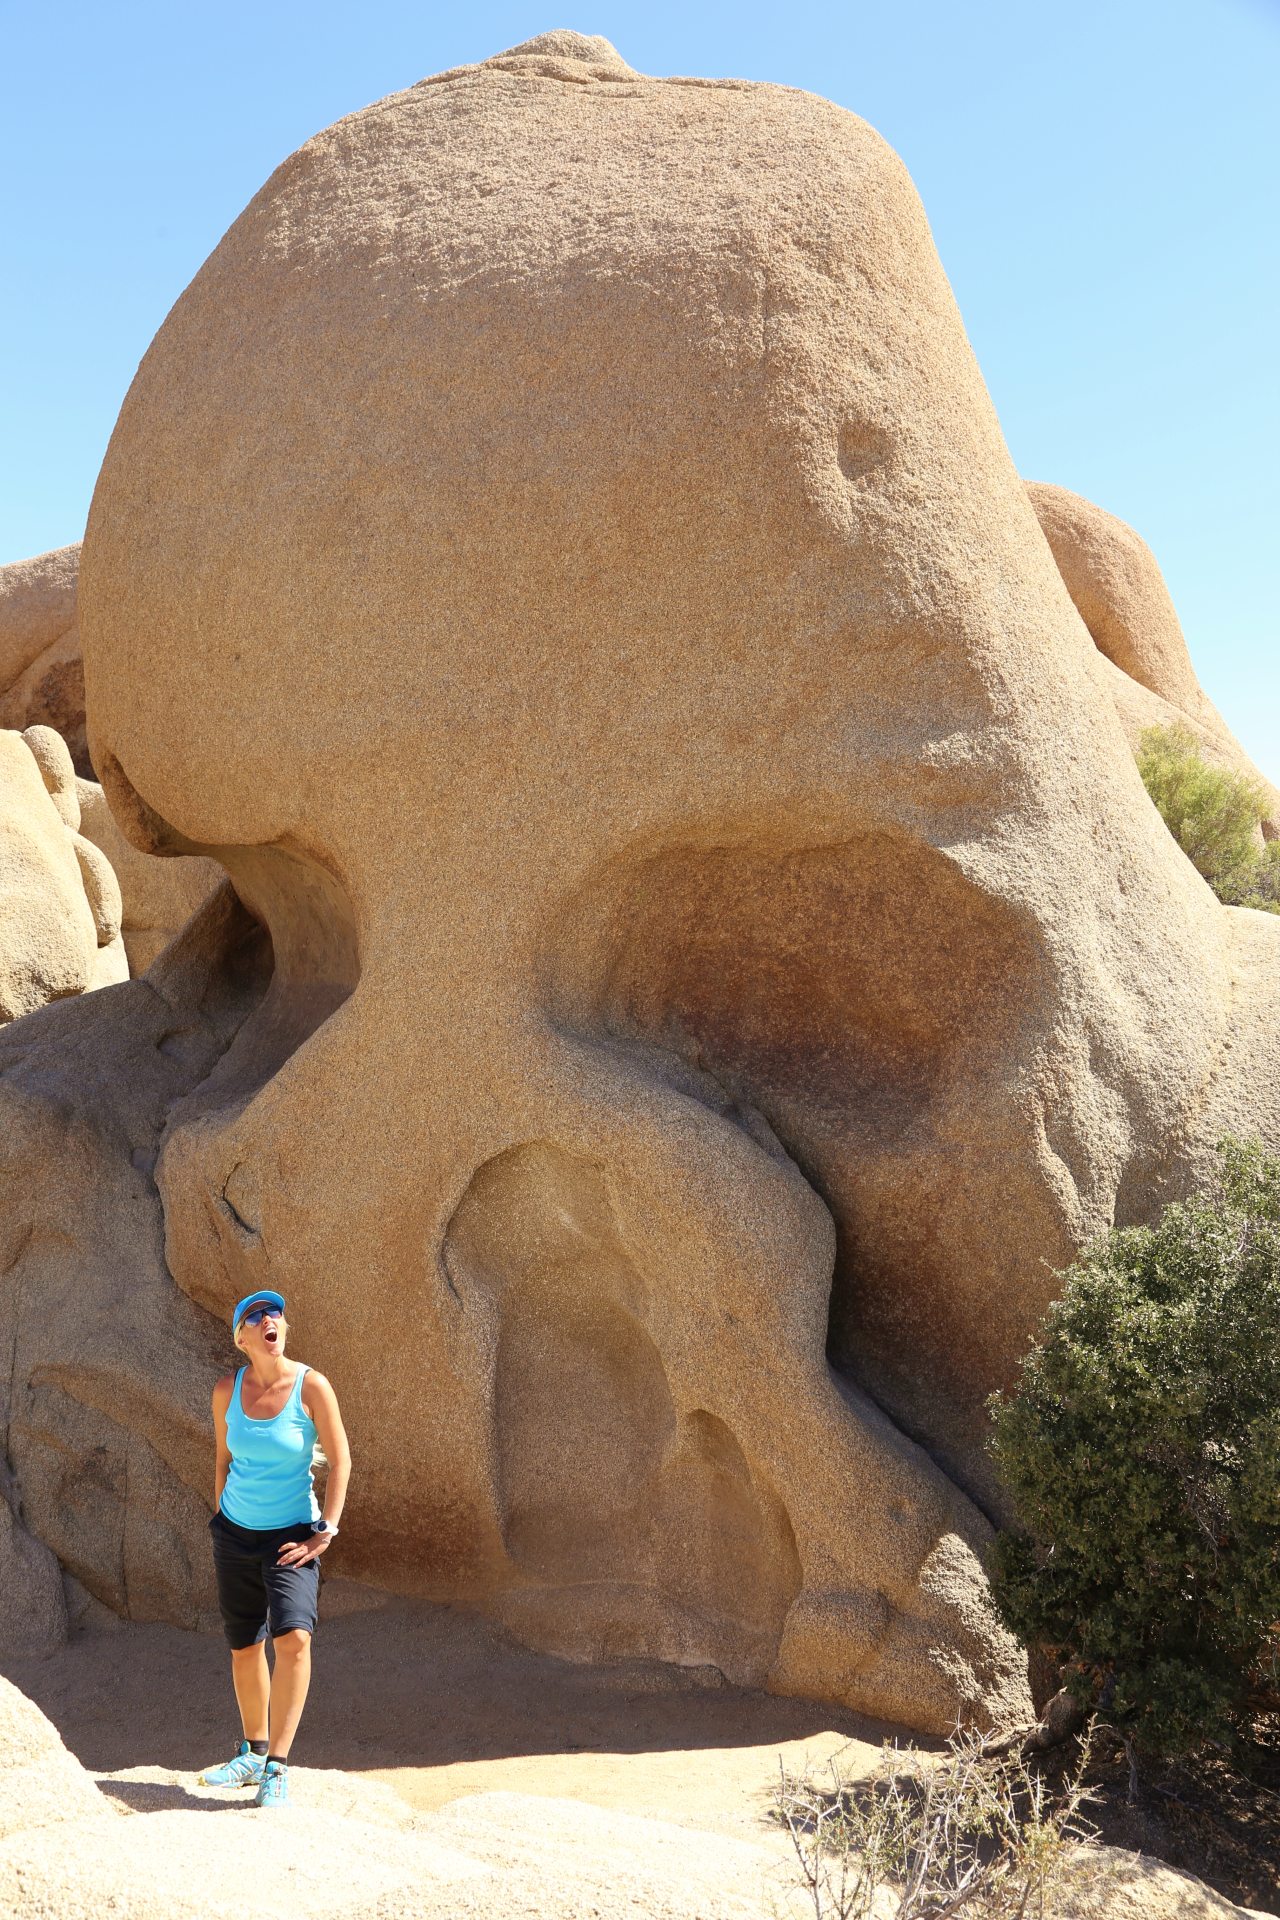 Skull Rock - sieht wirklich wie ein Totenkopf aus! - Blondine, Erosion, Felsen, Felsformation, Gesicht, Himmel, Joshua Tree National Park, Jumbo Rocks, Kalifornien, Kopf, Monument, mythisch, Personen, Portrait, Porträt, Rock, Schädel, Skull Rock, Skull Rock Nature Trail, Skulptur, Stein, Steinskulptur, Totenkopf - HOFBAUER-HOFMANN Sofia - (Pinto Wye, Twentynine Palms, California, Vereinigte Staaten)